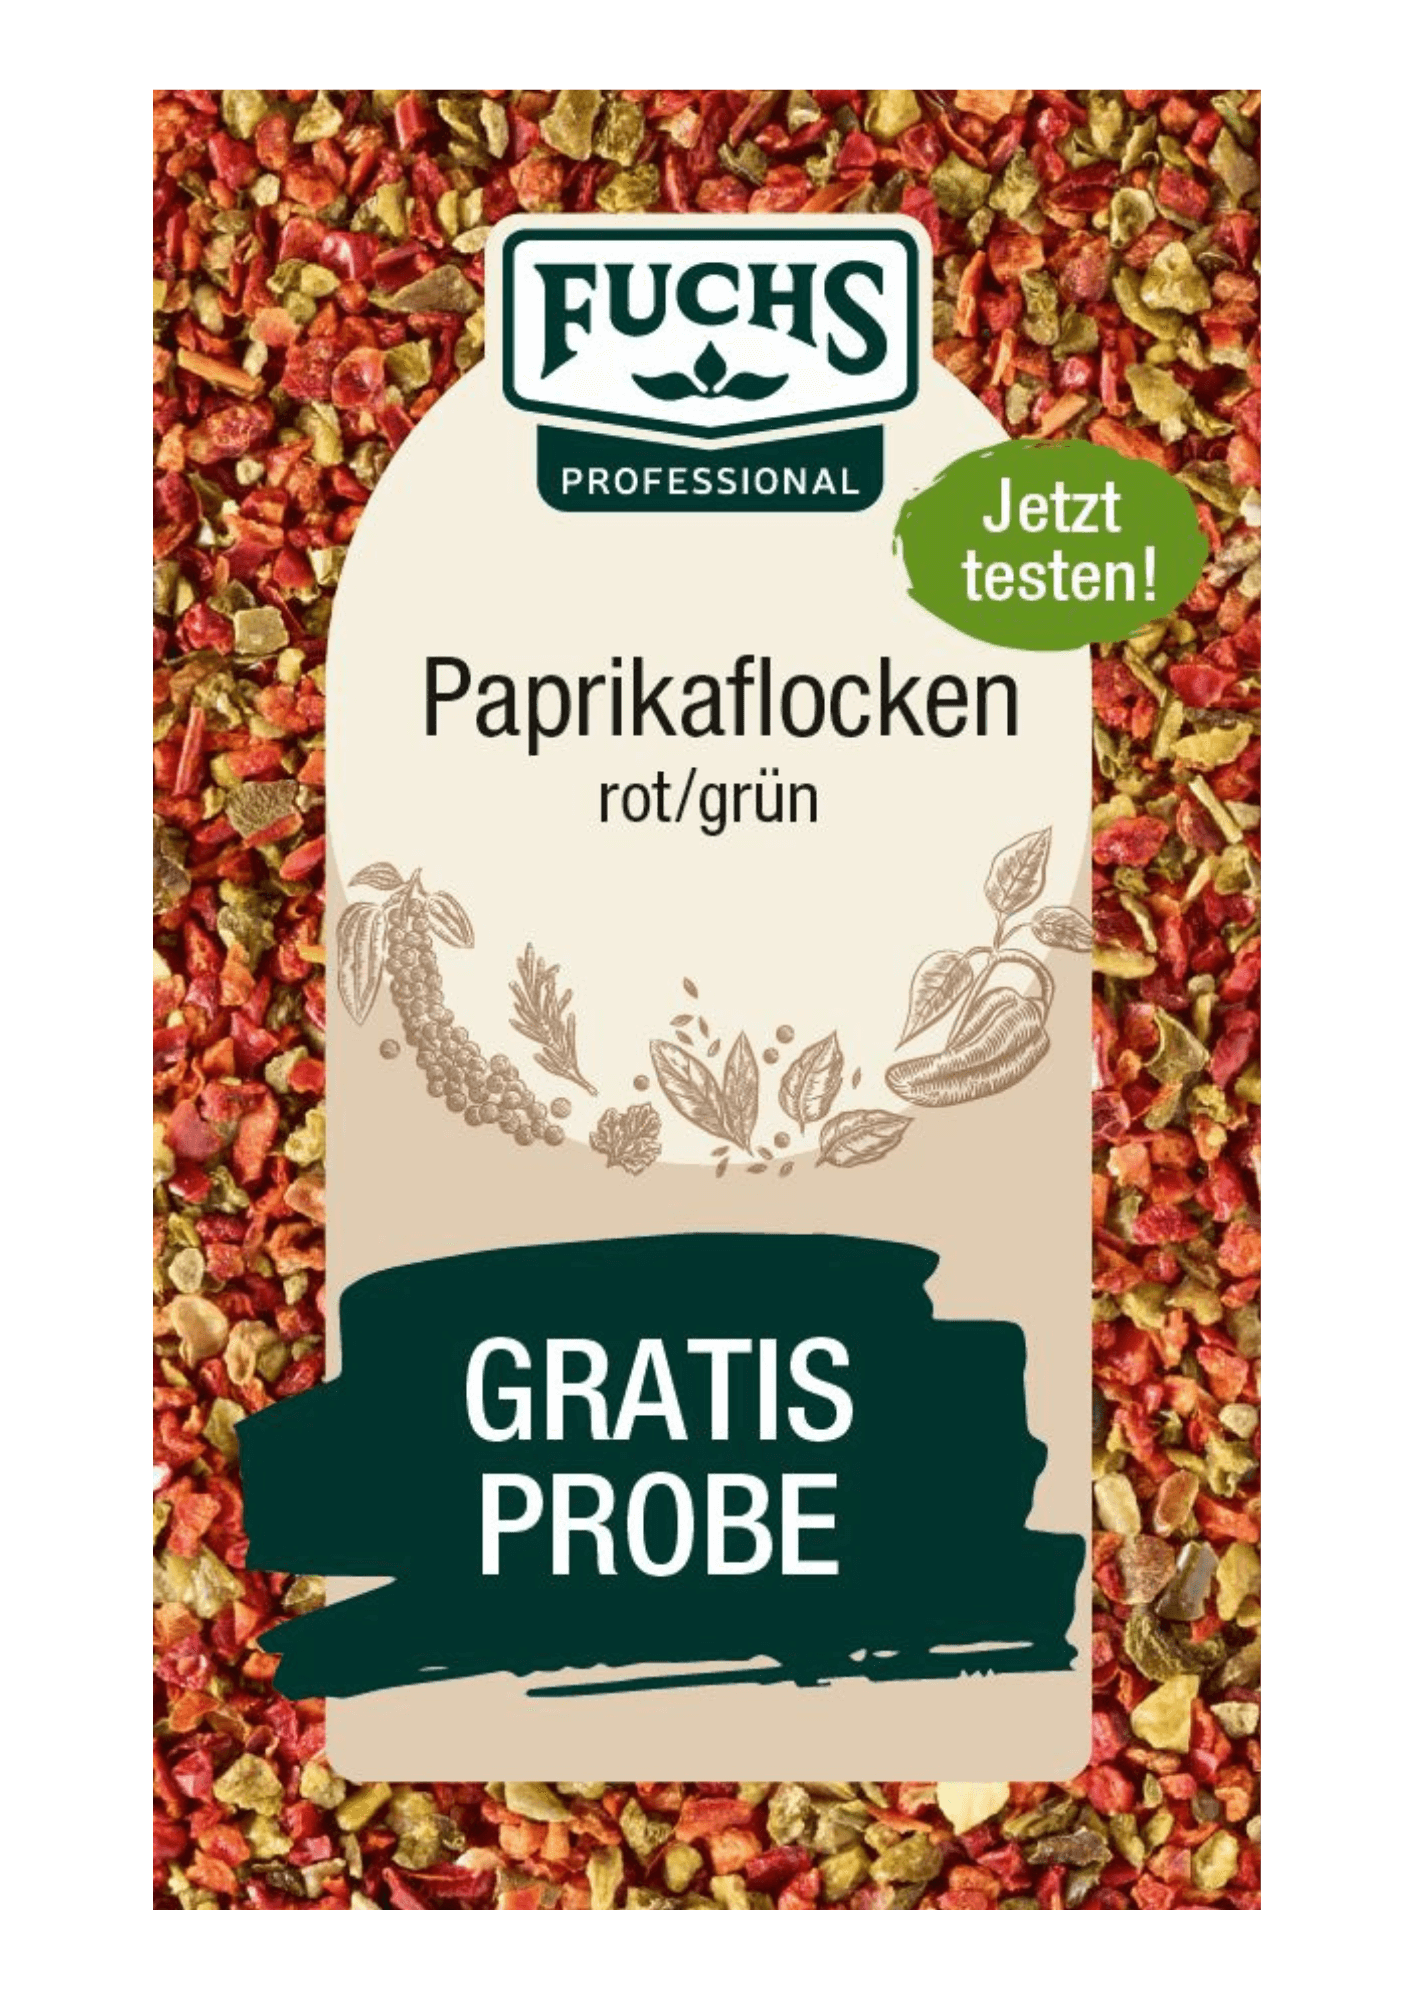 Paprikaflocken rot/grün Probierbeutel